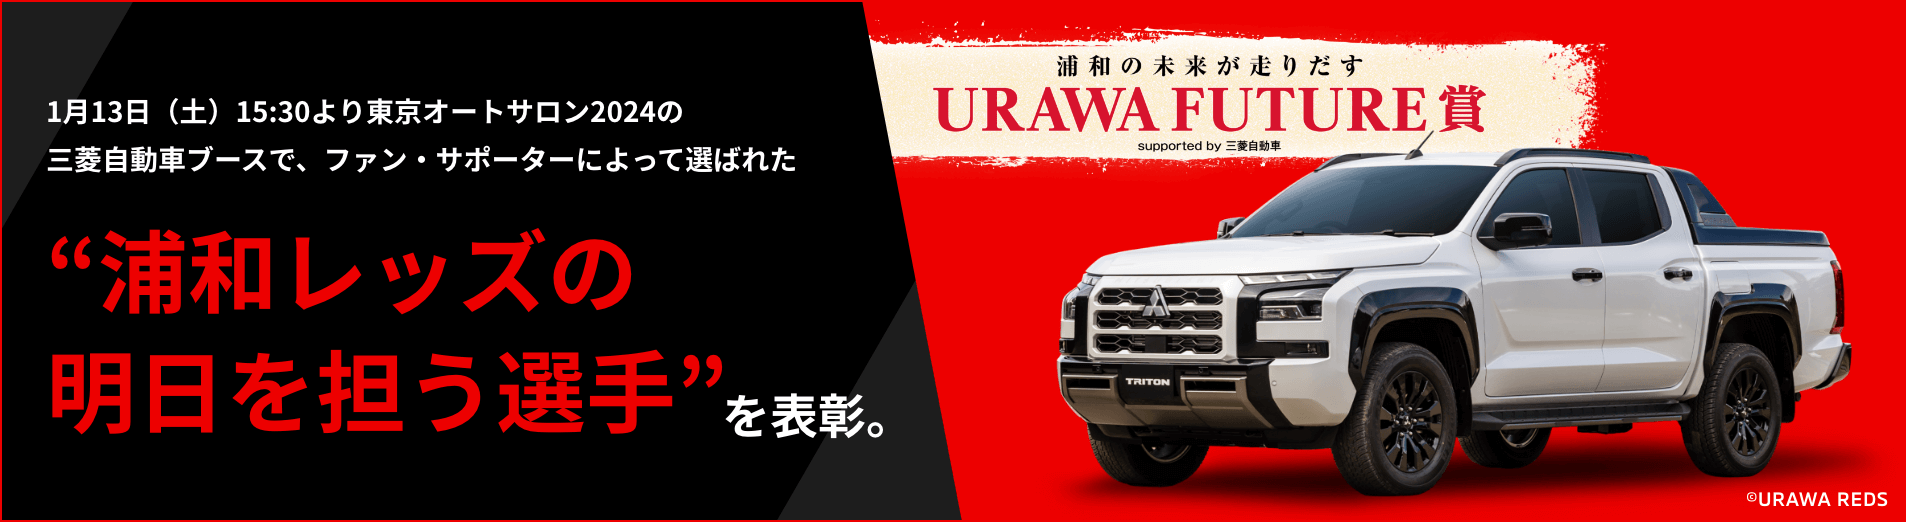 1月13日（土）15:30より東京オートサロン2024の三菱自動車ブースで、ファン・サポーターによって選ばれた“浦和レッズの明日を担う選手”を表彰。浦和の未来が走り出す URAWA FUTURE賞 supported by 三菱自動車